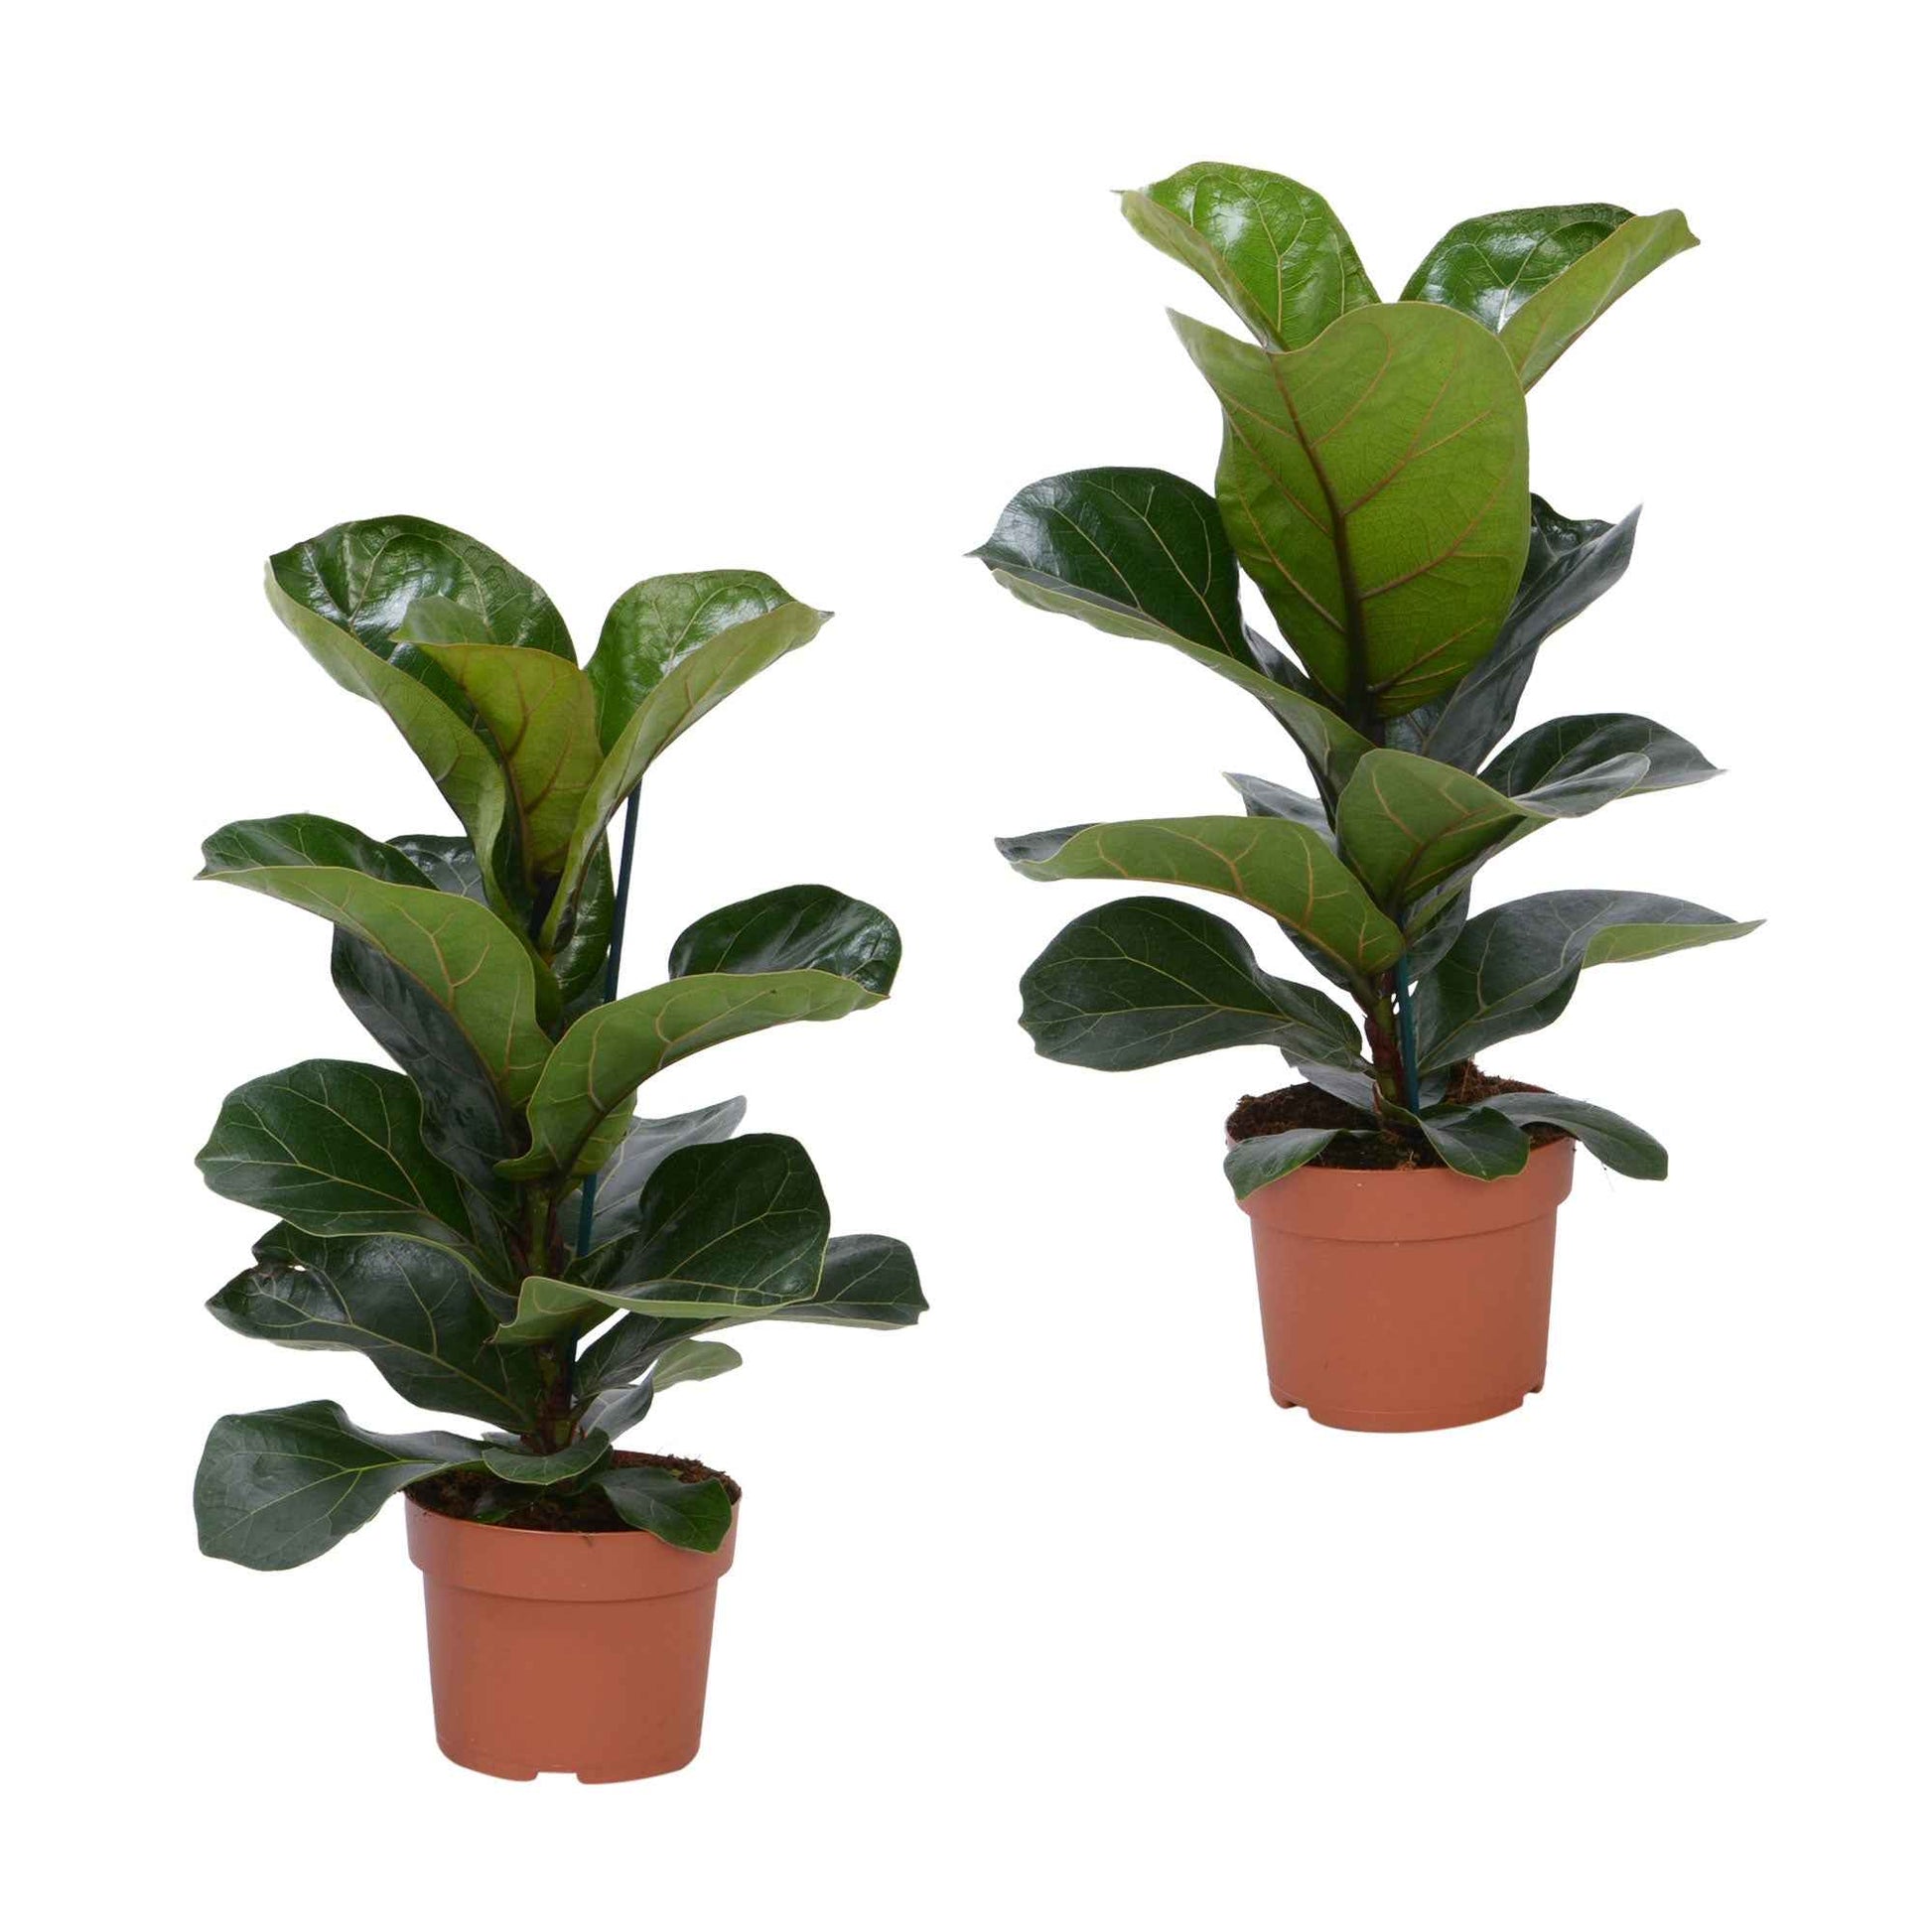 2x Geigenfeige Ficus lyrata 'Bambino' - Grüne Zimmerpflanzen